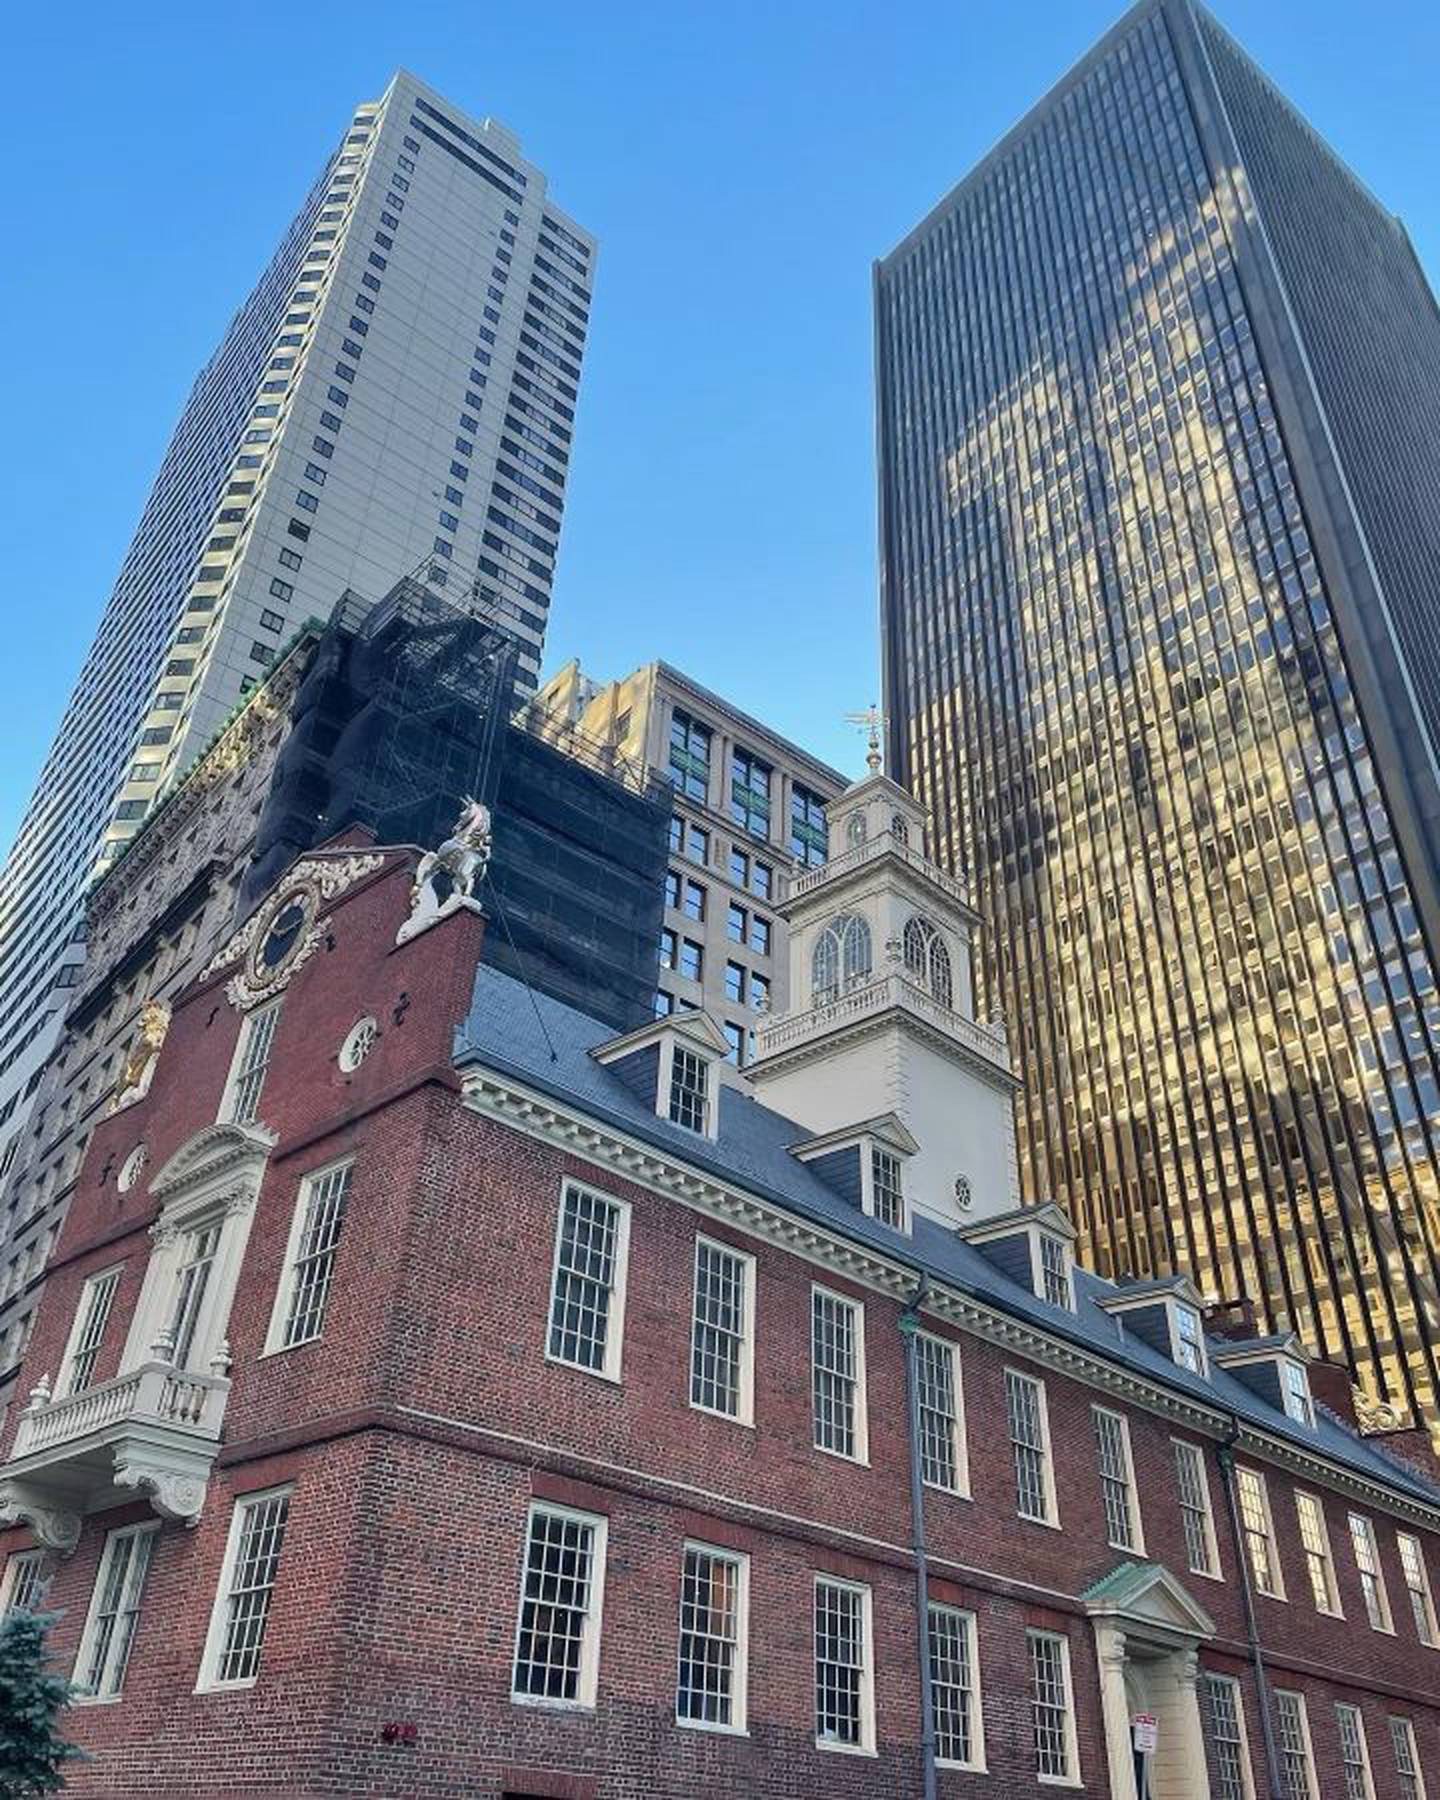 La ciudad de Boston se fundó el 7 de setiembre de 1630, o sea, tiene justo 393 años, está a 7 años de cumplir los 4 siglos de fundada